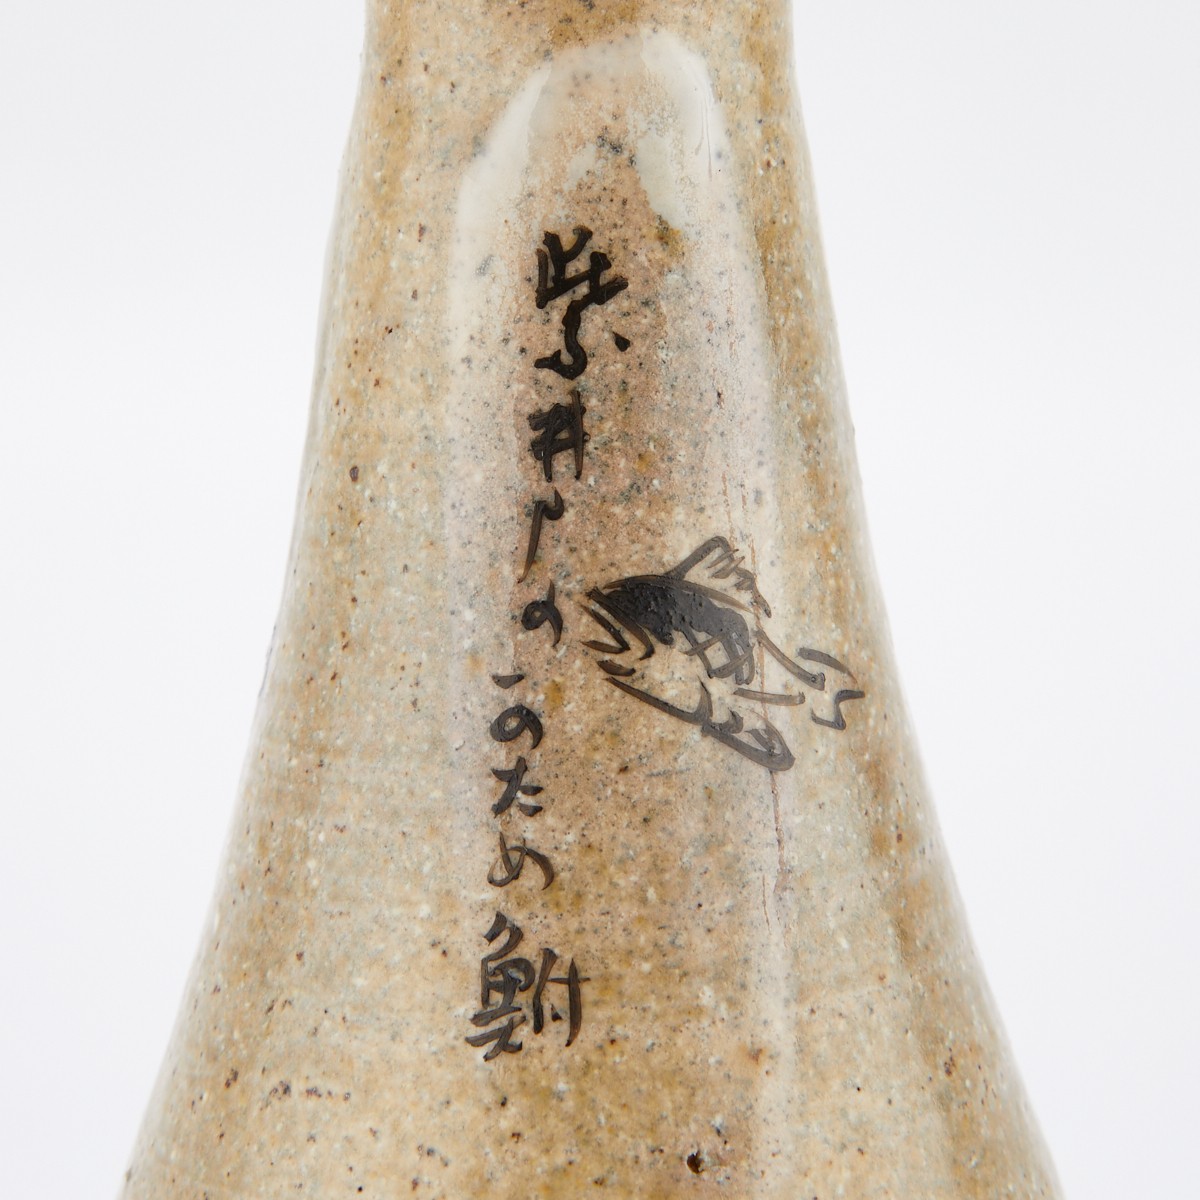 Grp: 4 Japanese Ceramic Sake Bottles 2 Pairs - Image 12 of 16